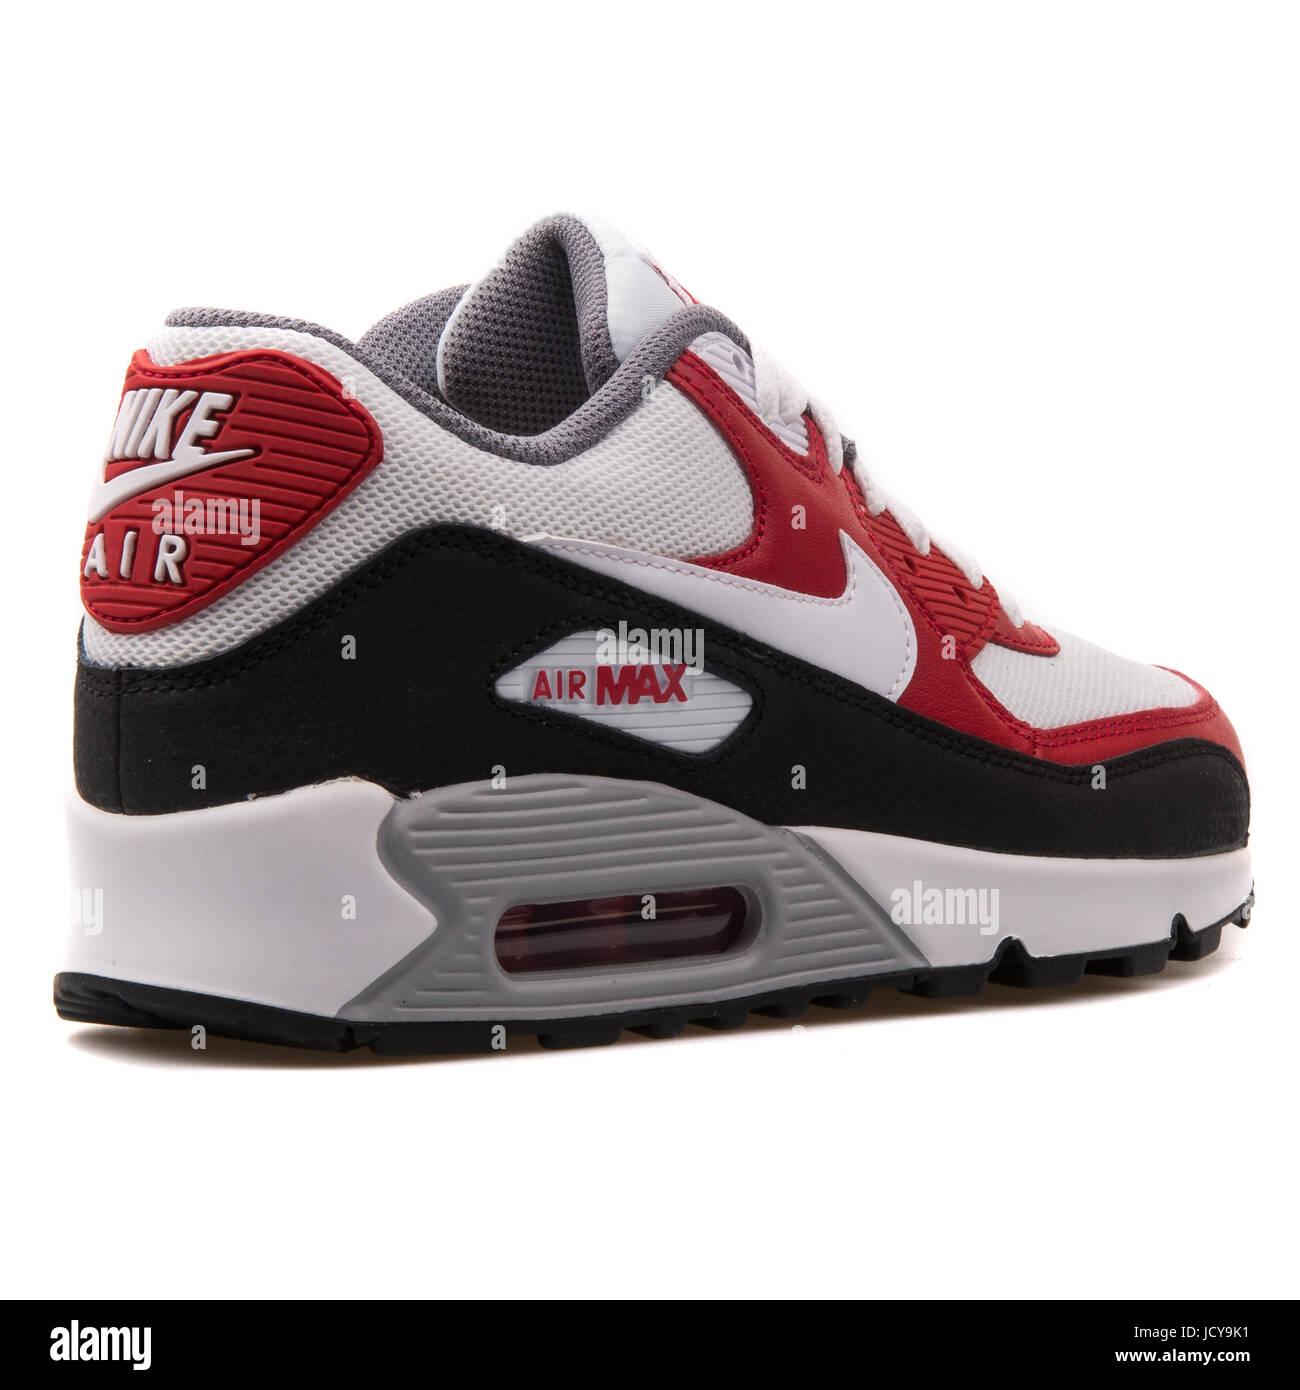 Nike Air Max 90 Malla (GS), blanco, rojo y negro de la Juventud calzados  running - 724824-102 Fotografía de stock - Alamy